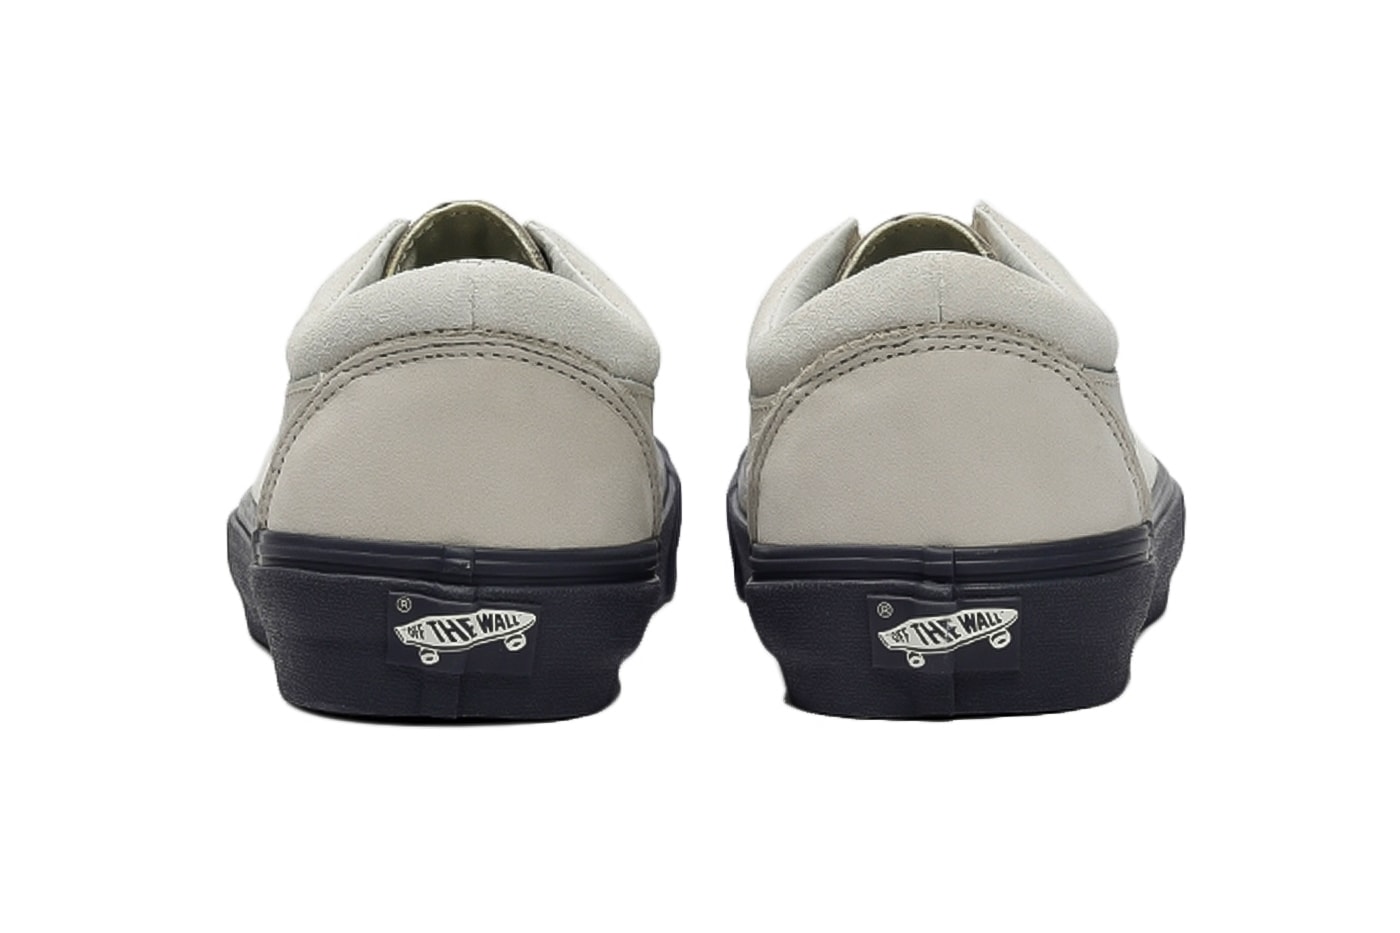 Vans Billy's BOLD NI LX Indigo Release VN0A4U4900N shoes sneakers kicks footwear japan tokyo 